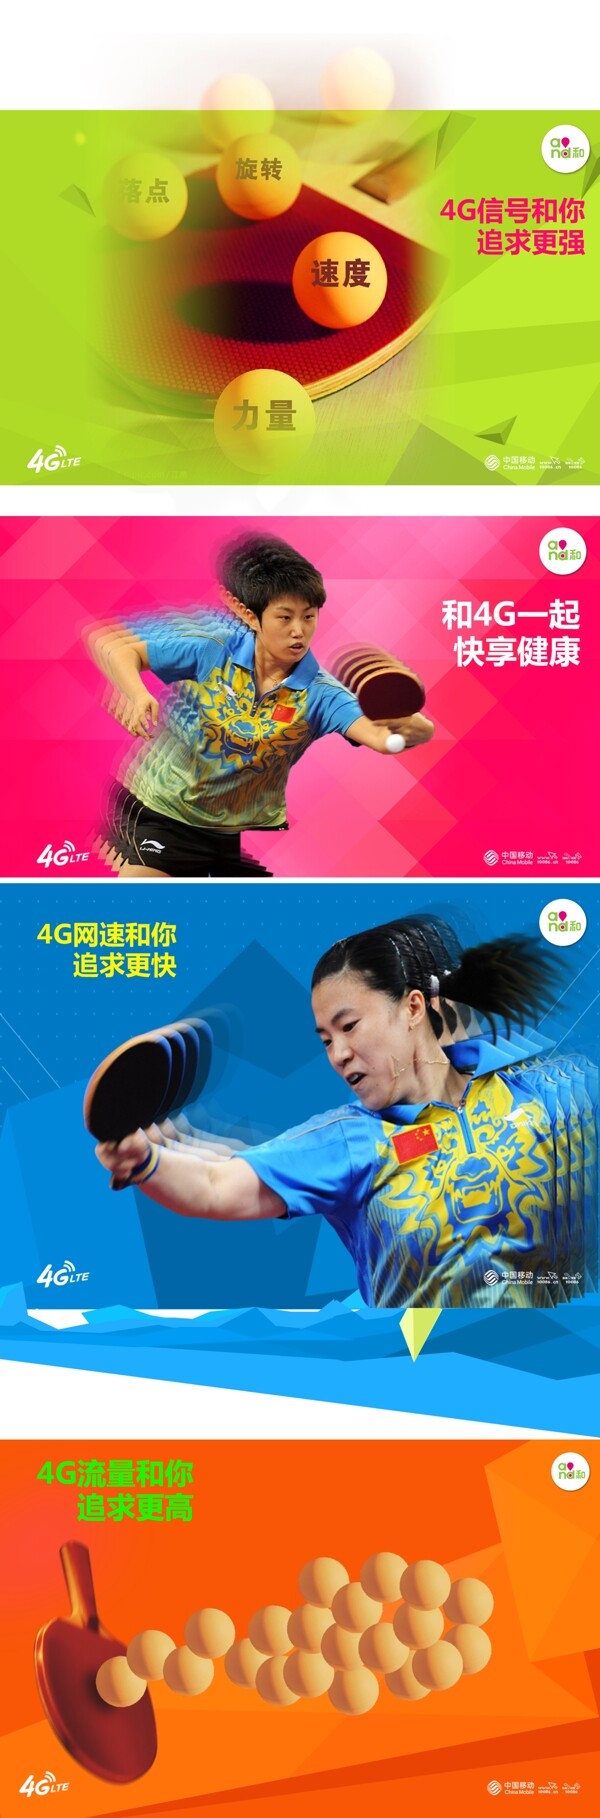 中国移动乒乓球比赛